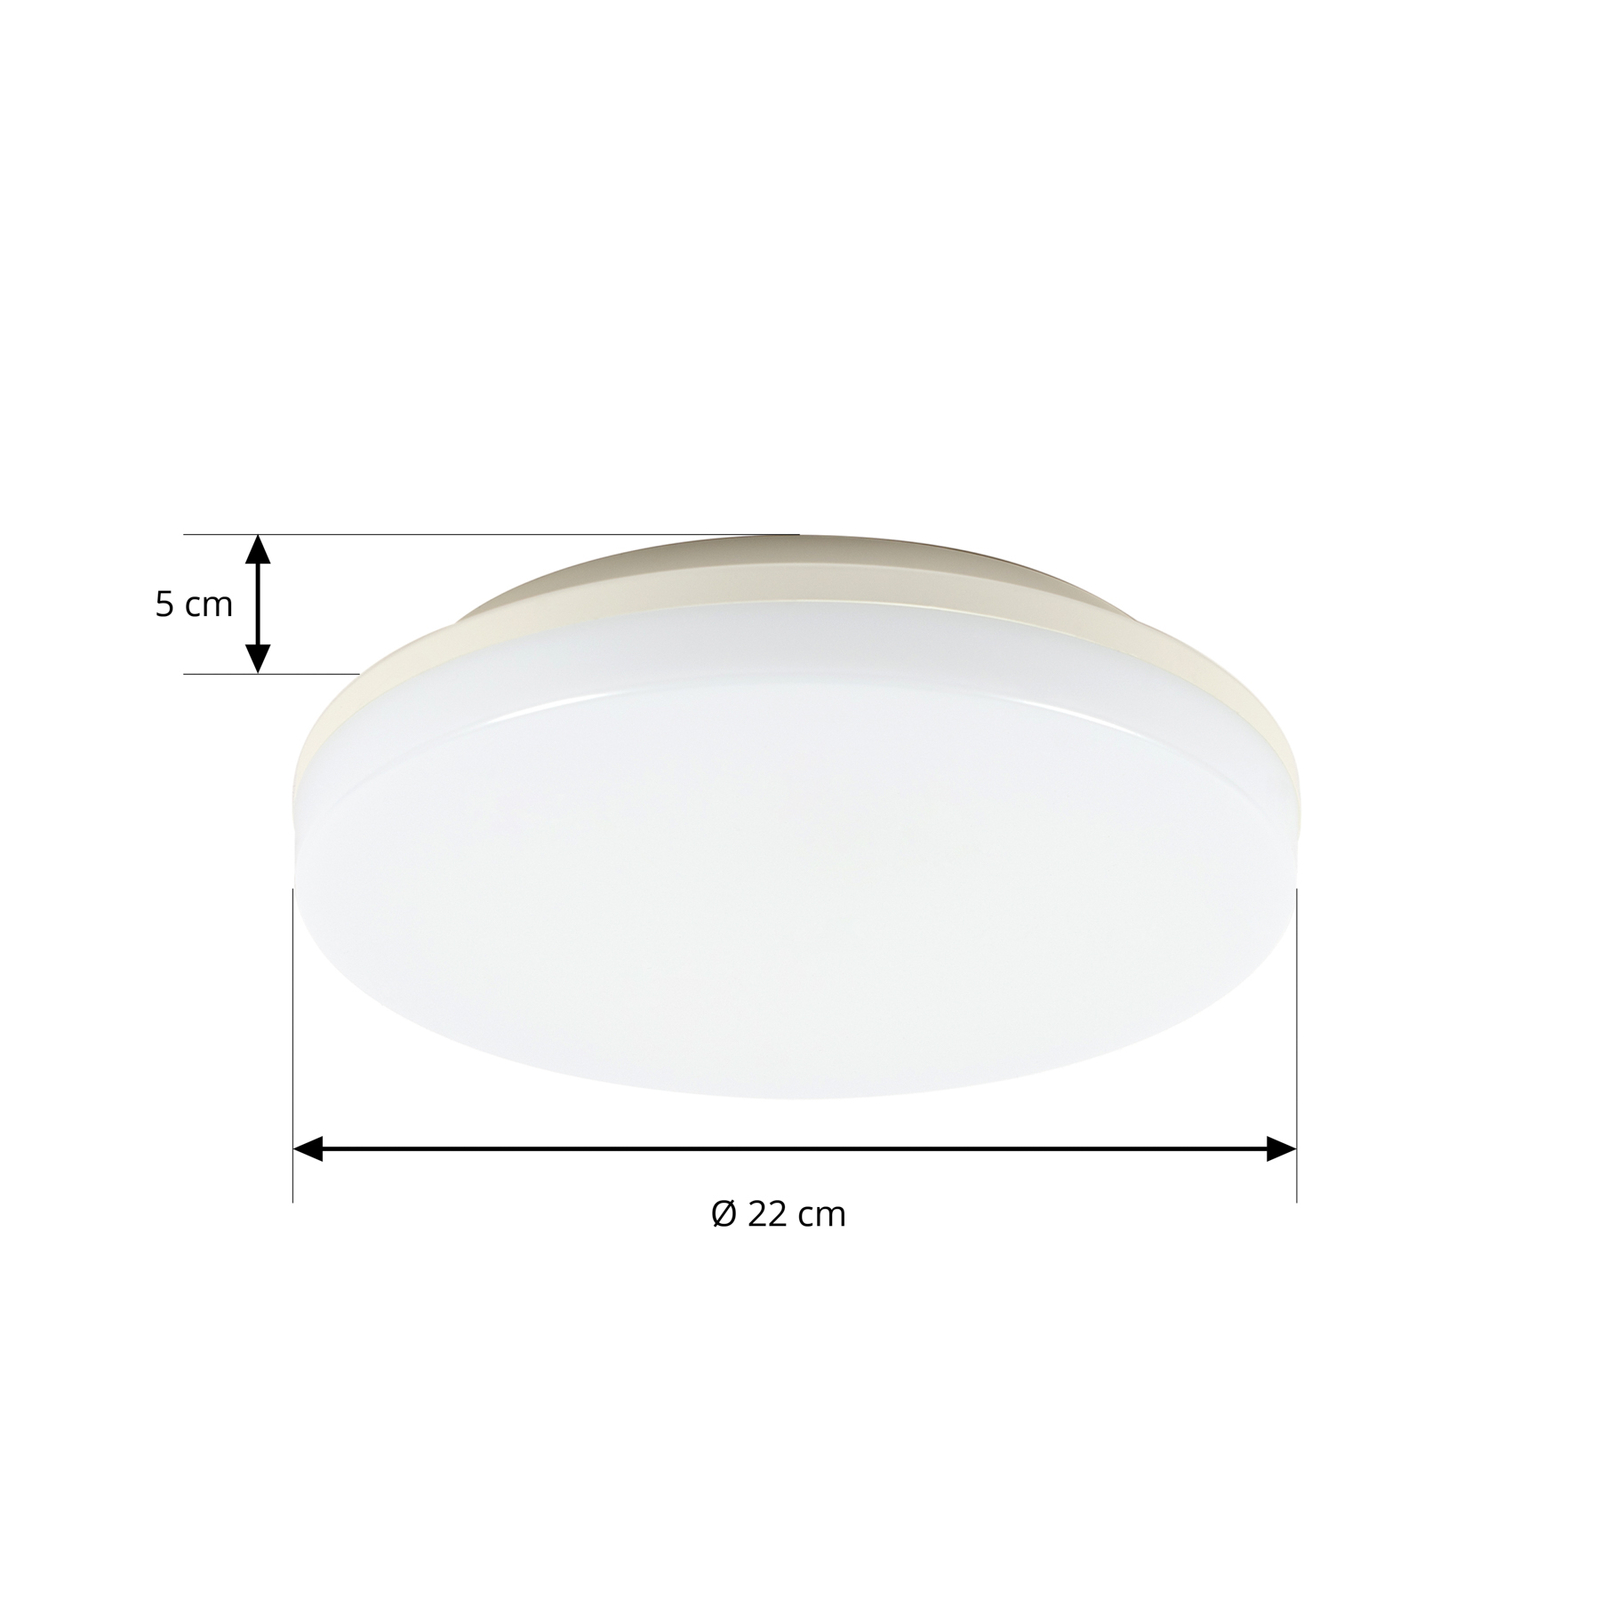 Prios Artin LED-Deckenlampe, Sensor, rund, 22 cm